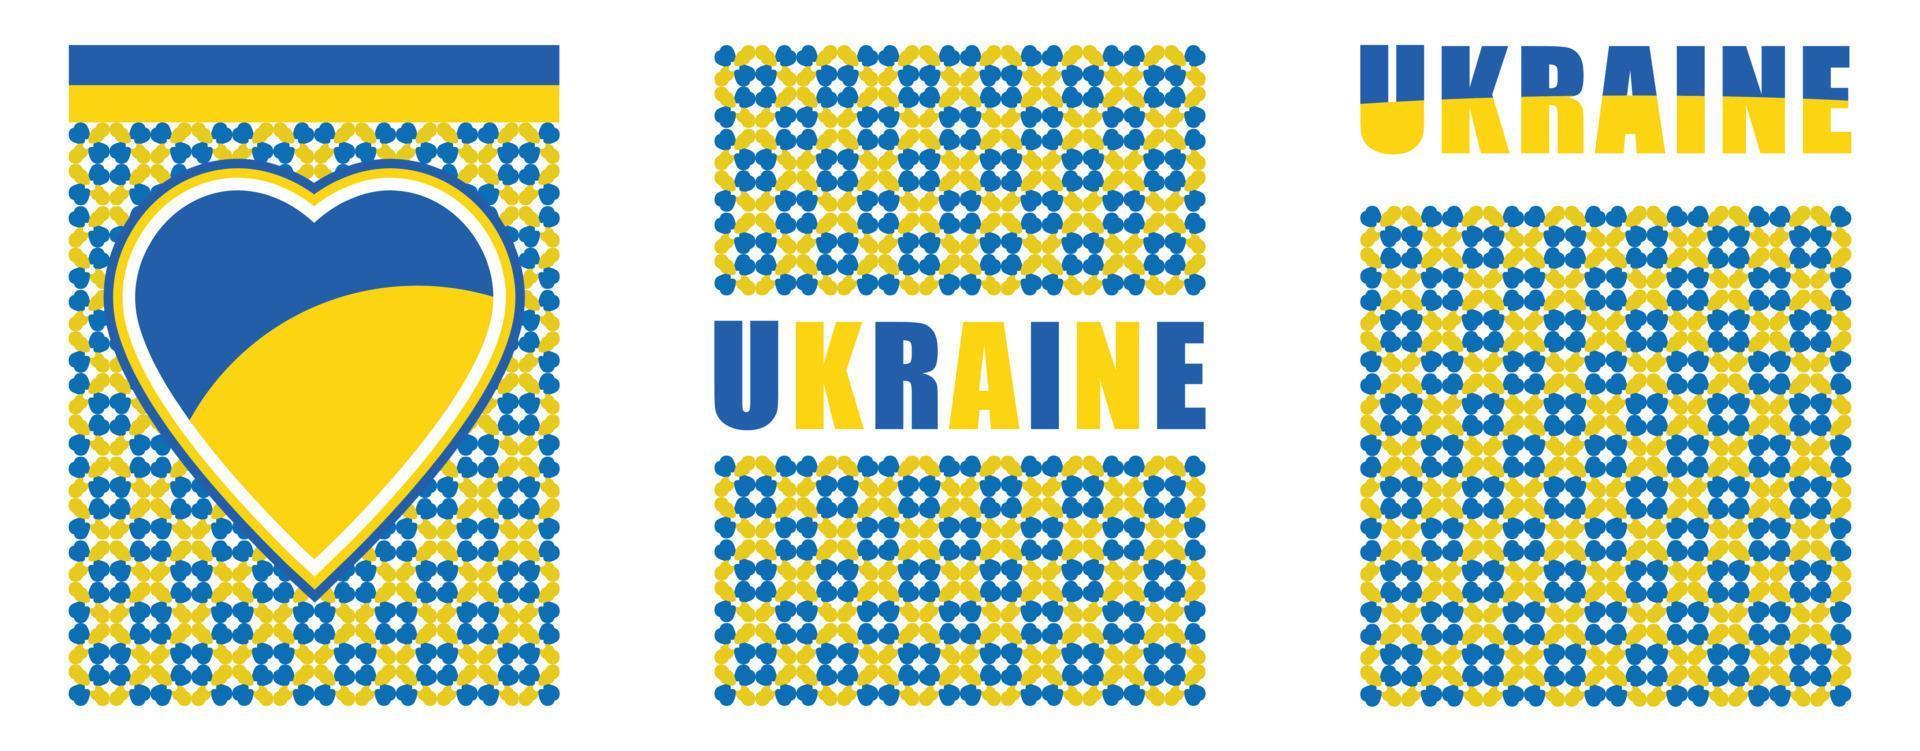 ukrainska mönster för nationaldagen med modern design. ukrainska flaggan och karta med typografi och blågul färgtema. konflikt med Ryssland, höjda nävar för solidaritet och broderibakgrund vektor